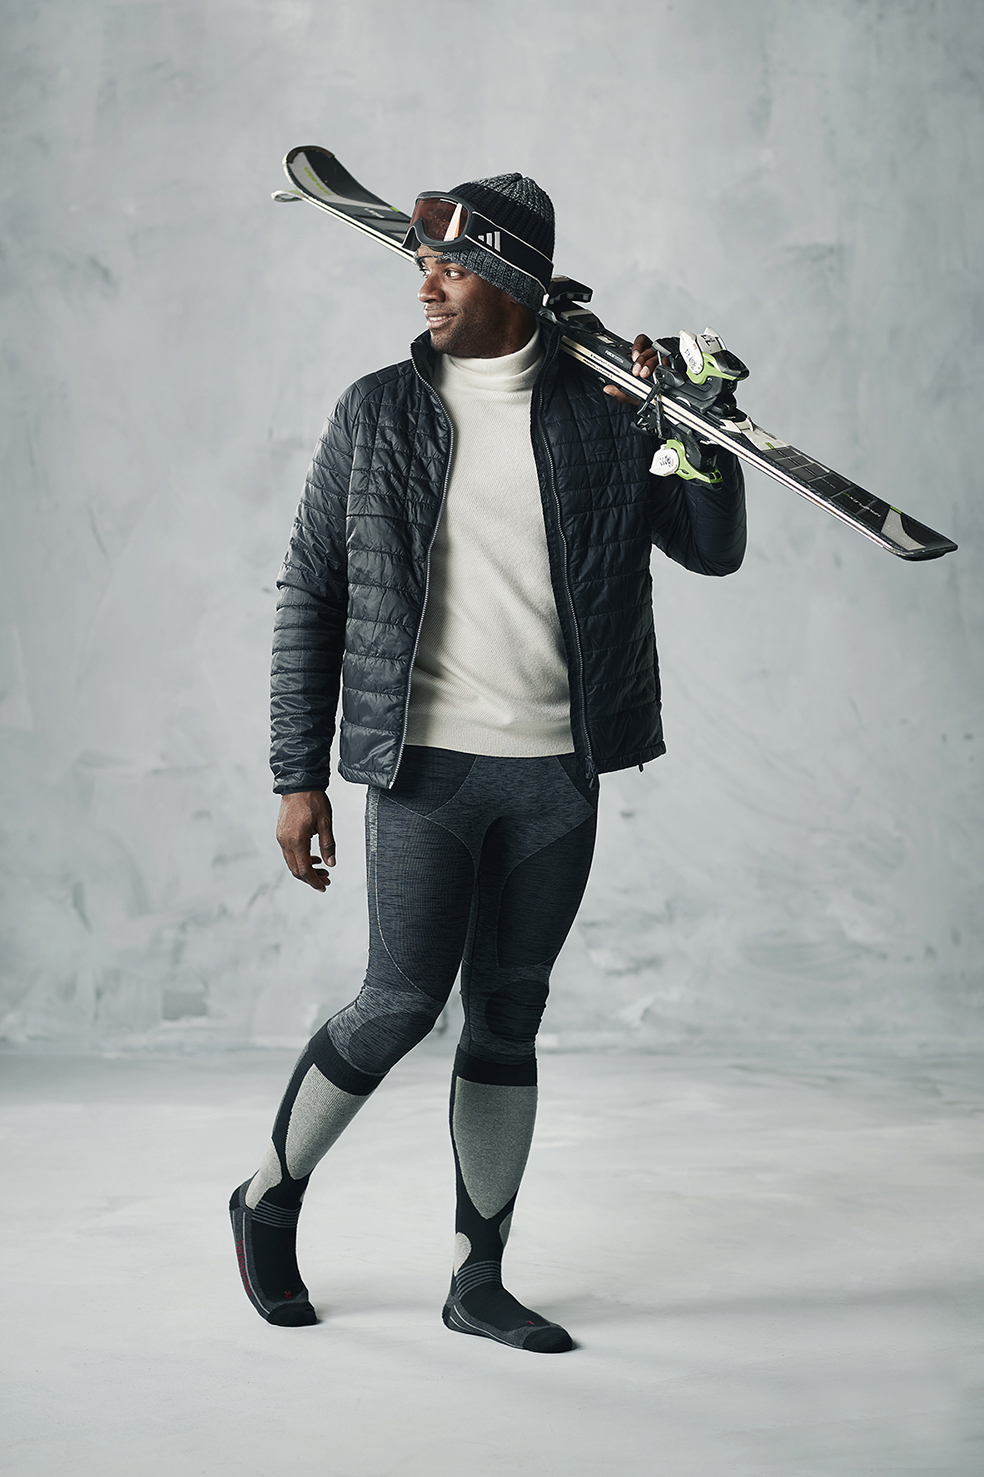 Donkere jongen die houd van skiën met zijn skisokken